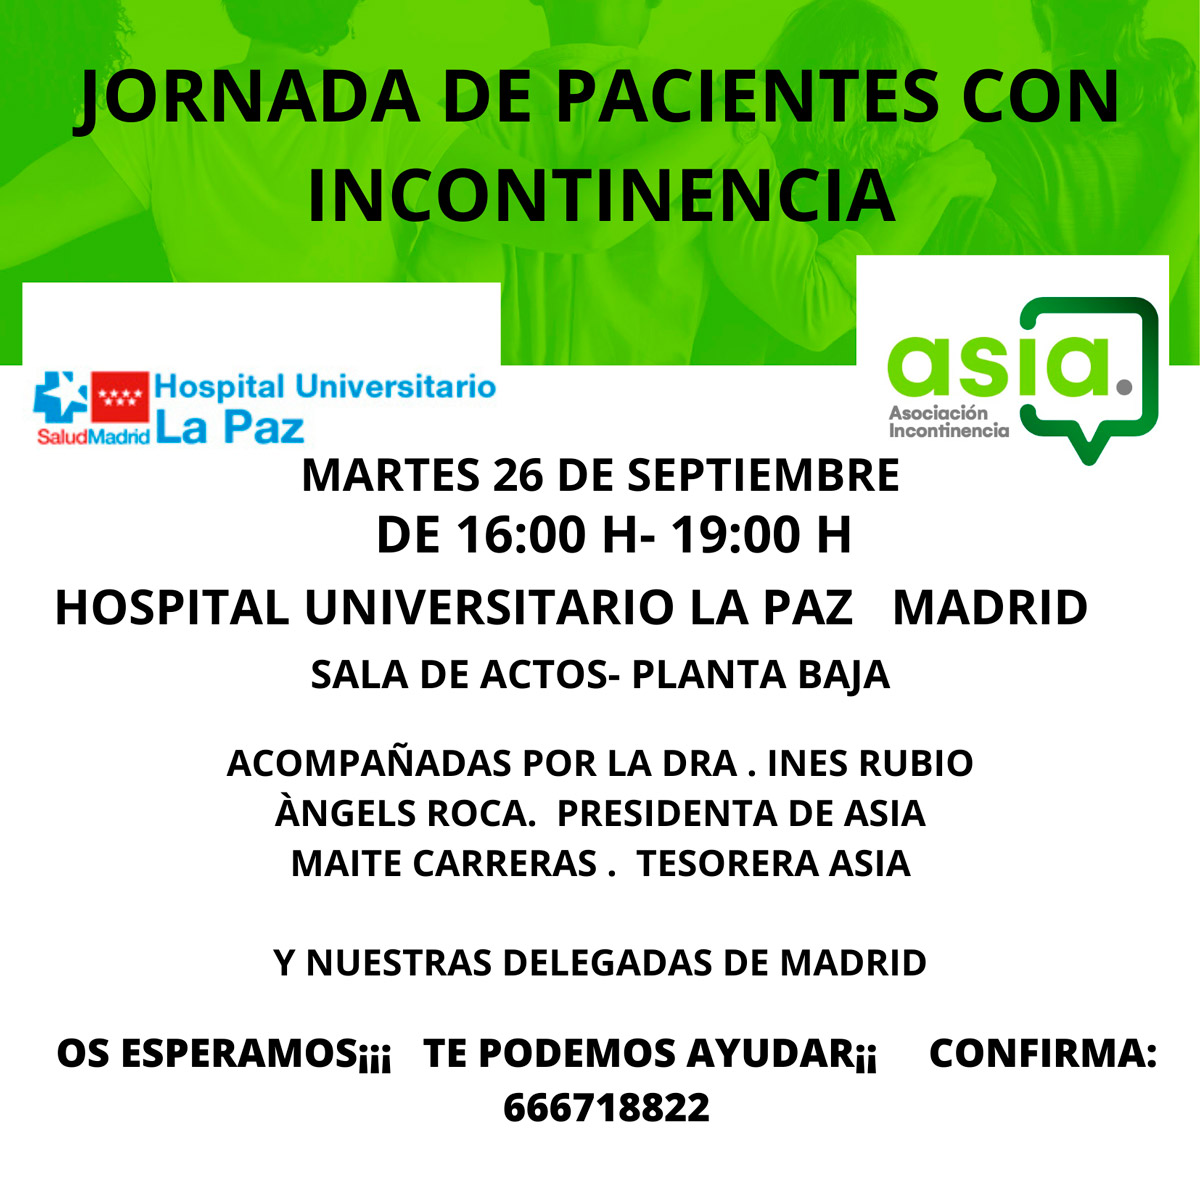 Jornada de pacientes con Incontinencia - Hospital Universitario La Paz de Madrid